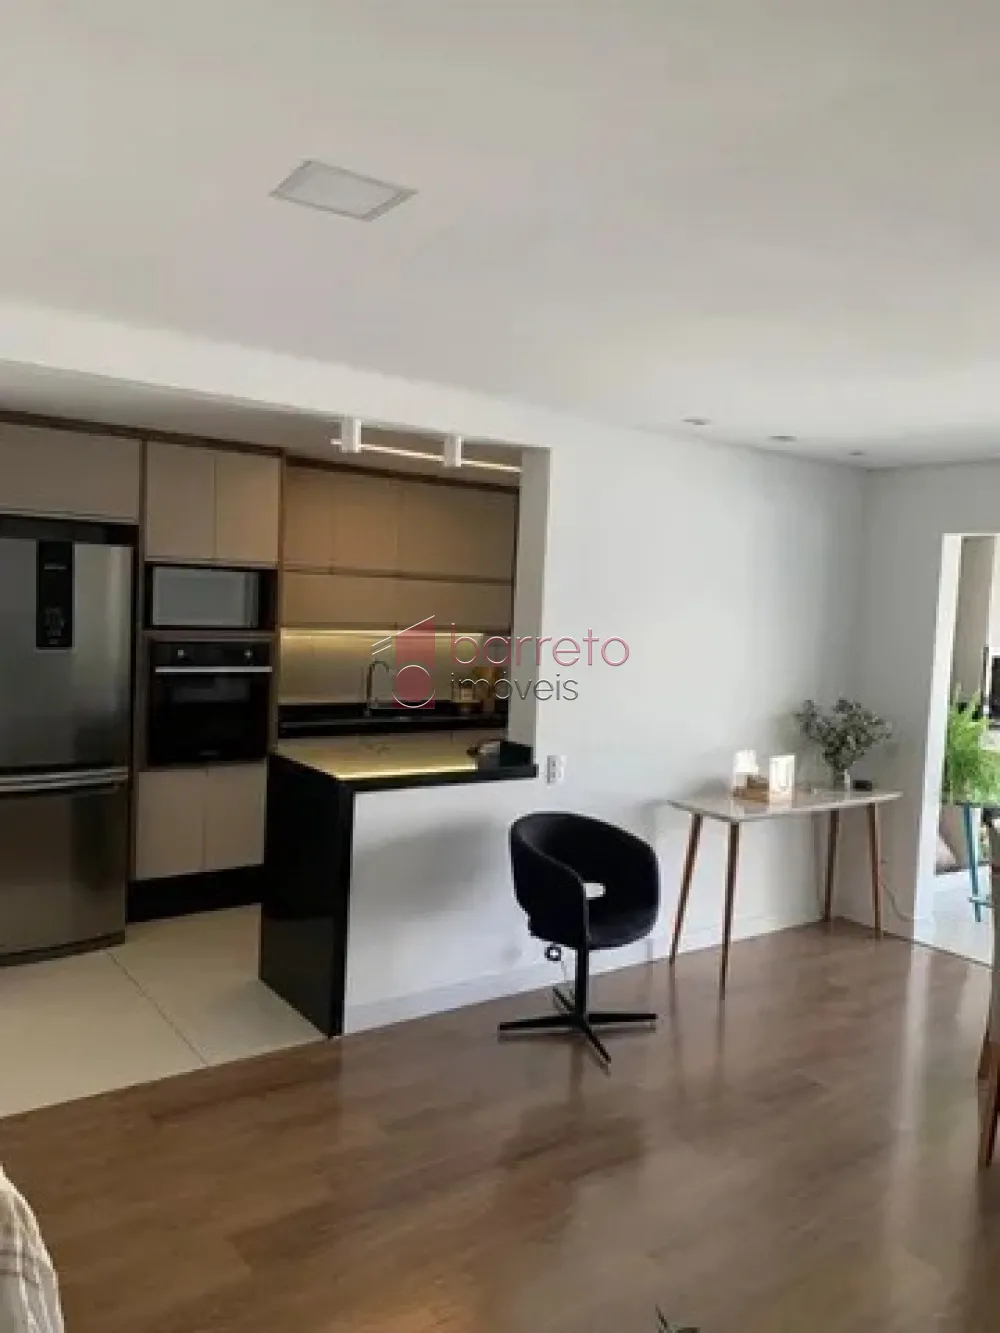 Comprar Apartamento / Padrão em Jundiaí R$ 850.000,00 - Foto 3